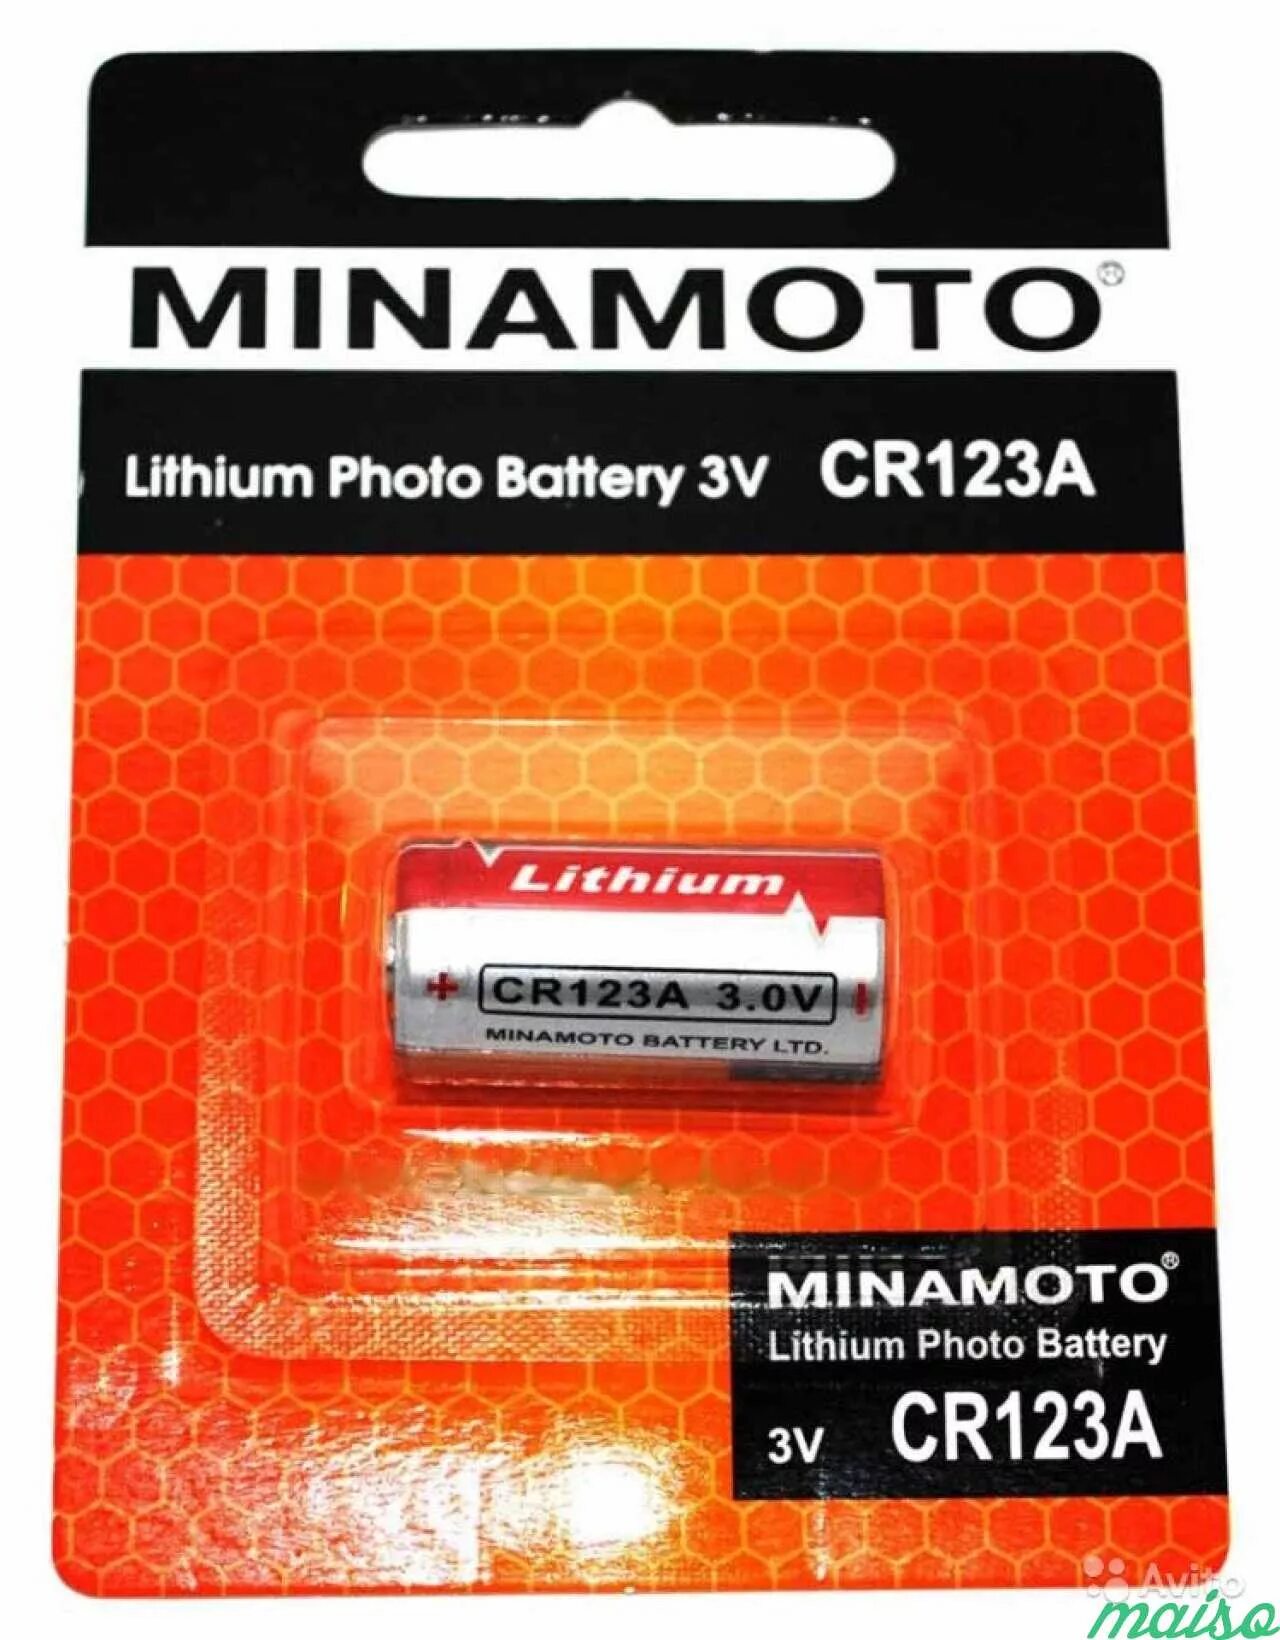 Cr123a батарейка купить. Сr123a батарейки cr123a. Литиевая батарея cr123a. Minamoto cr123. Батарейка литиевая GP Lithium CR 123.